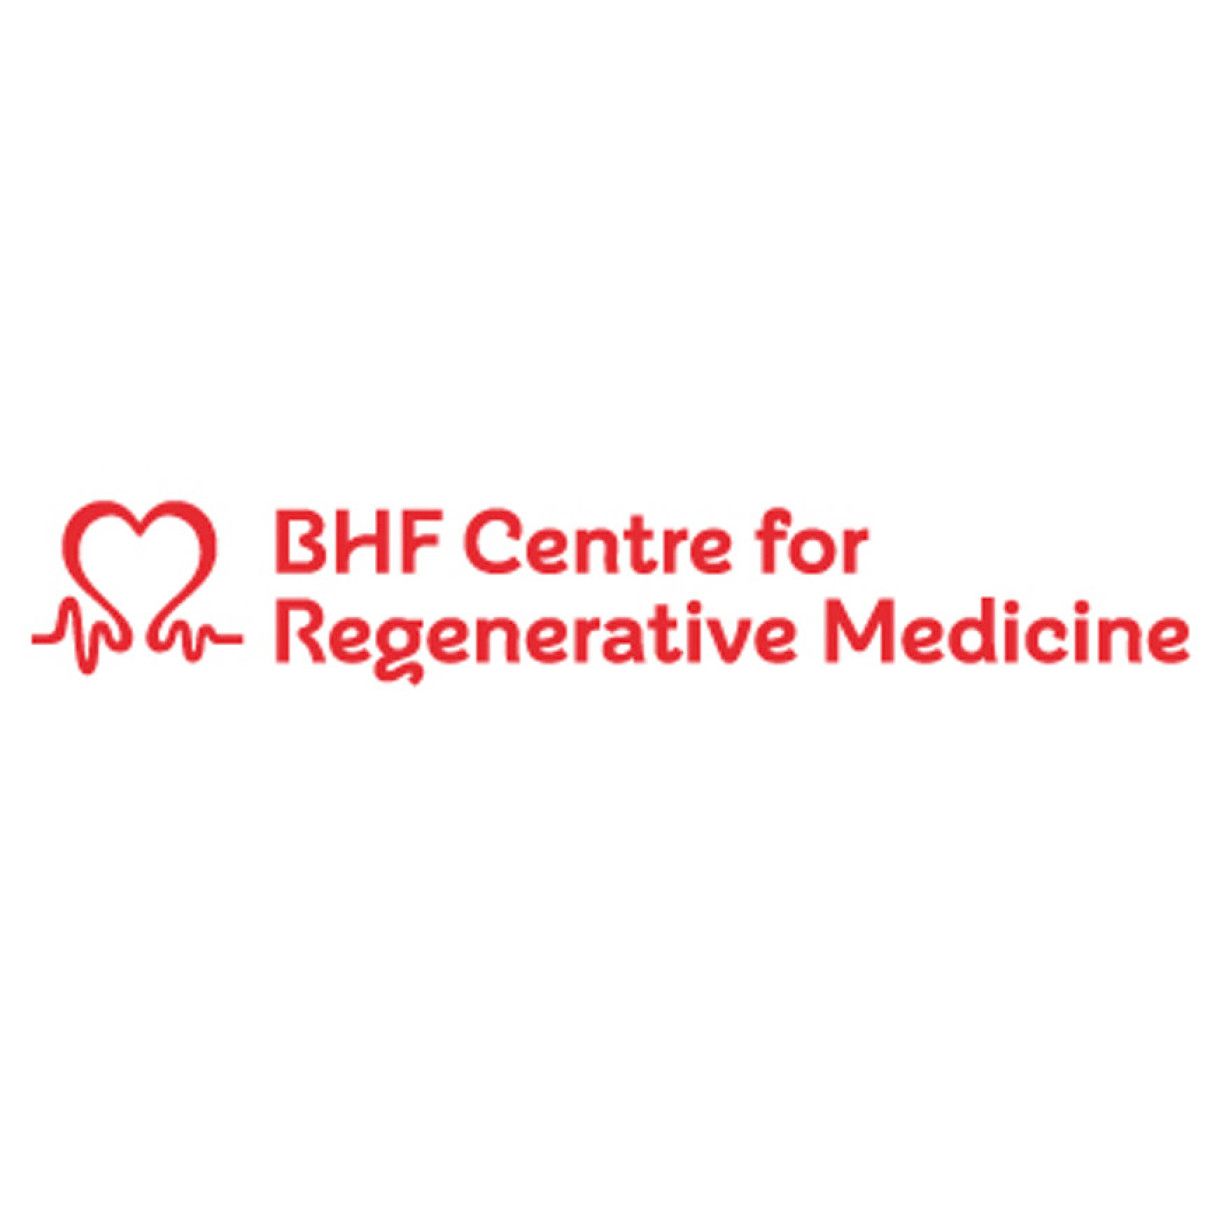 BHF Centre for Regenerative Medicine